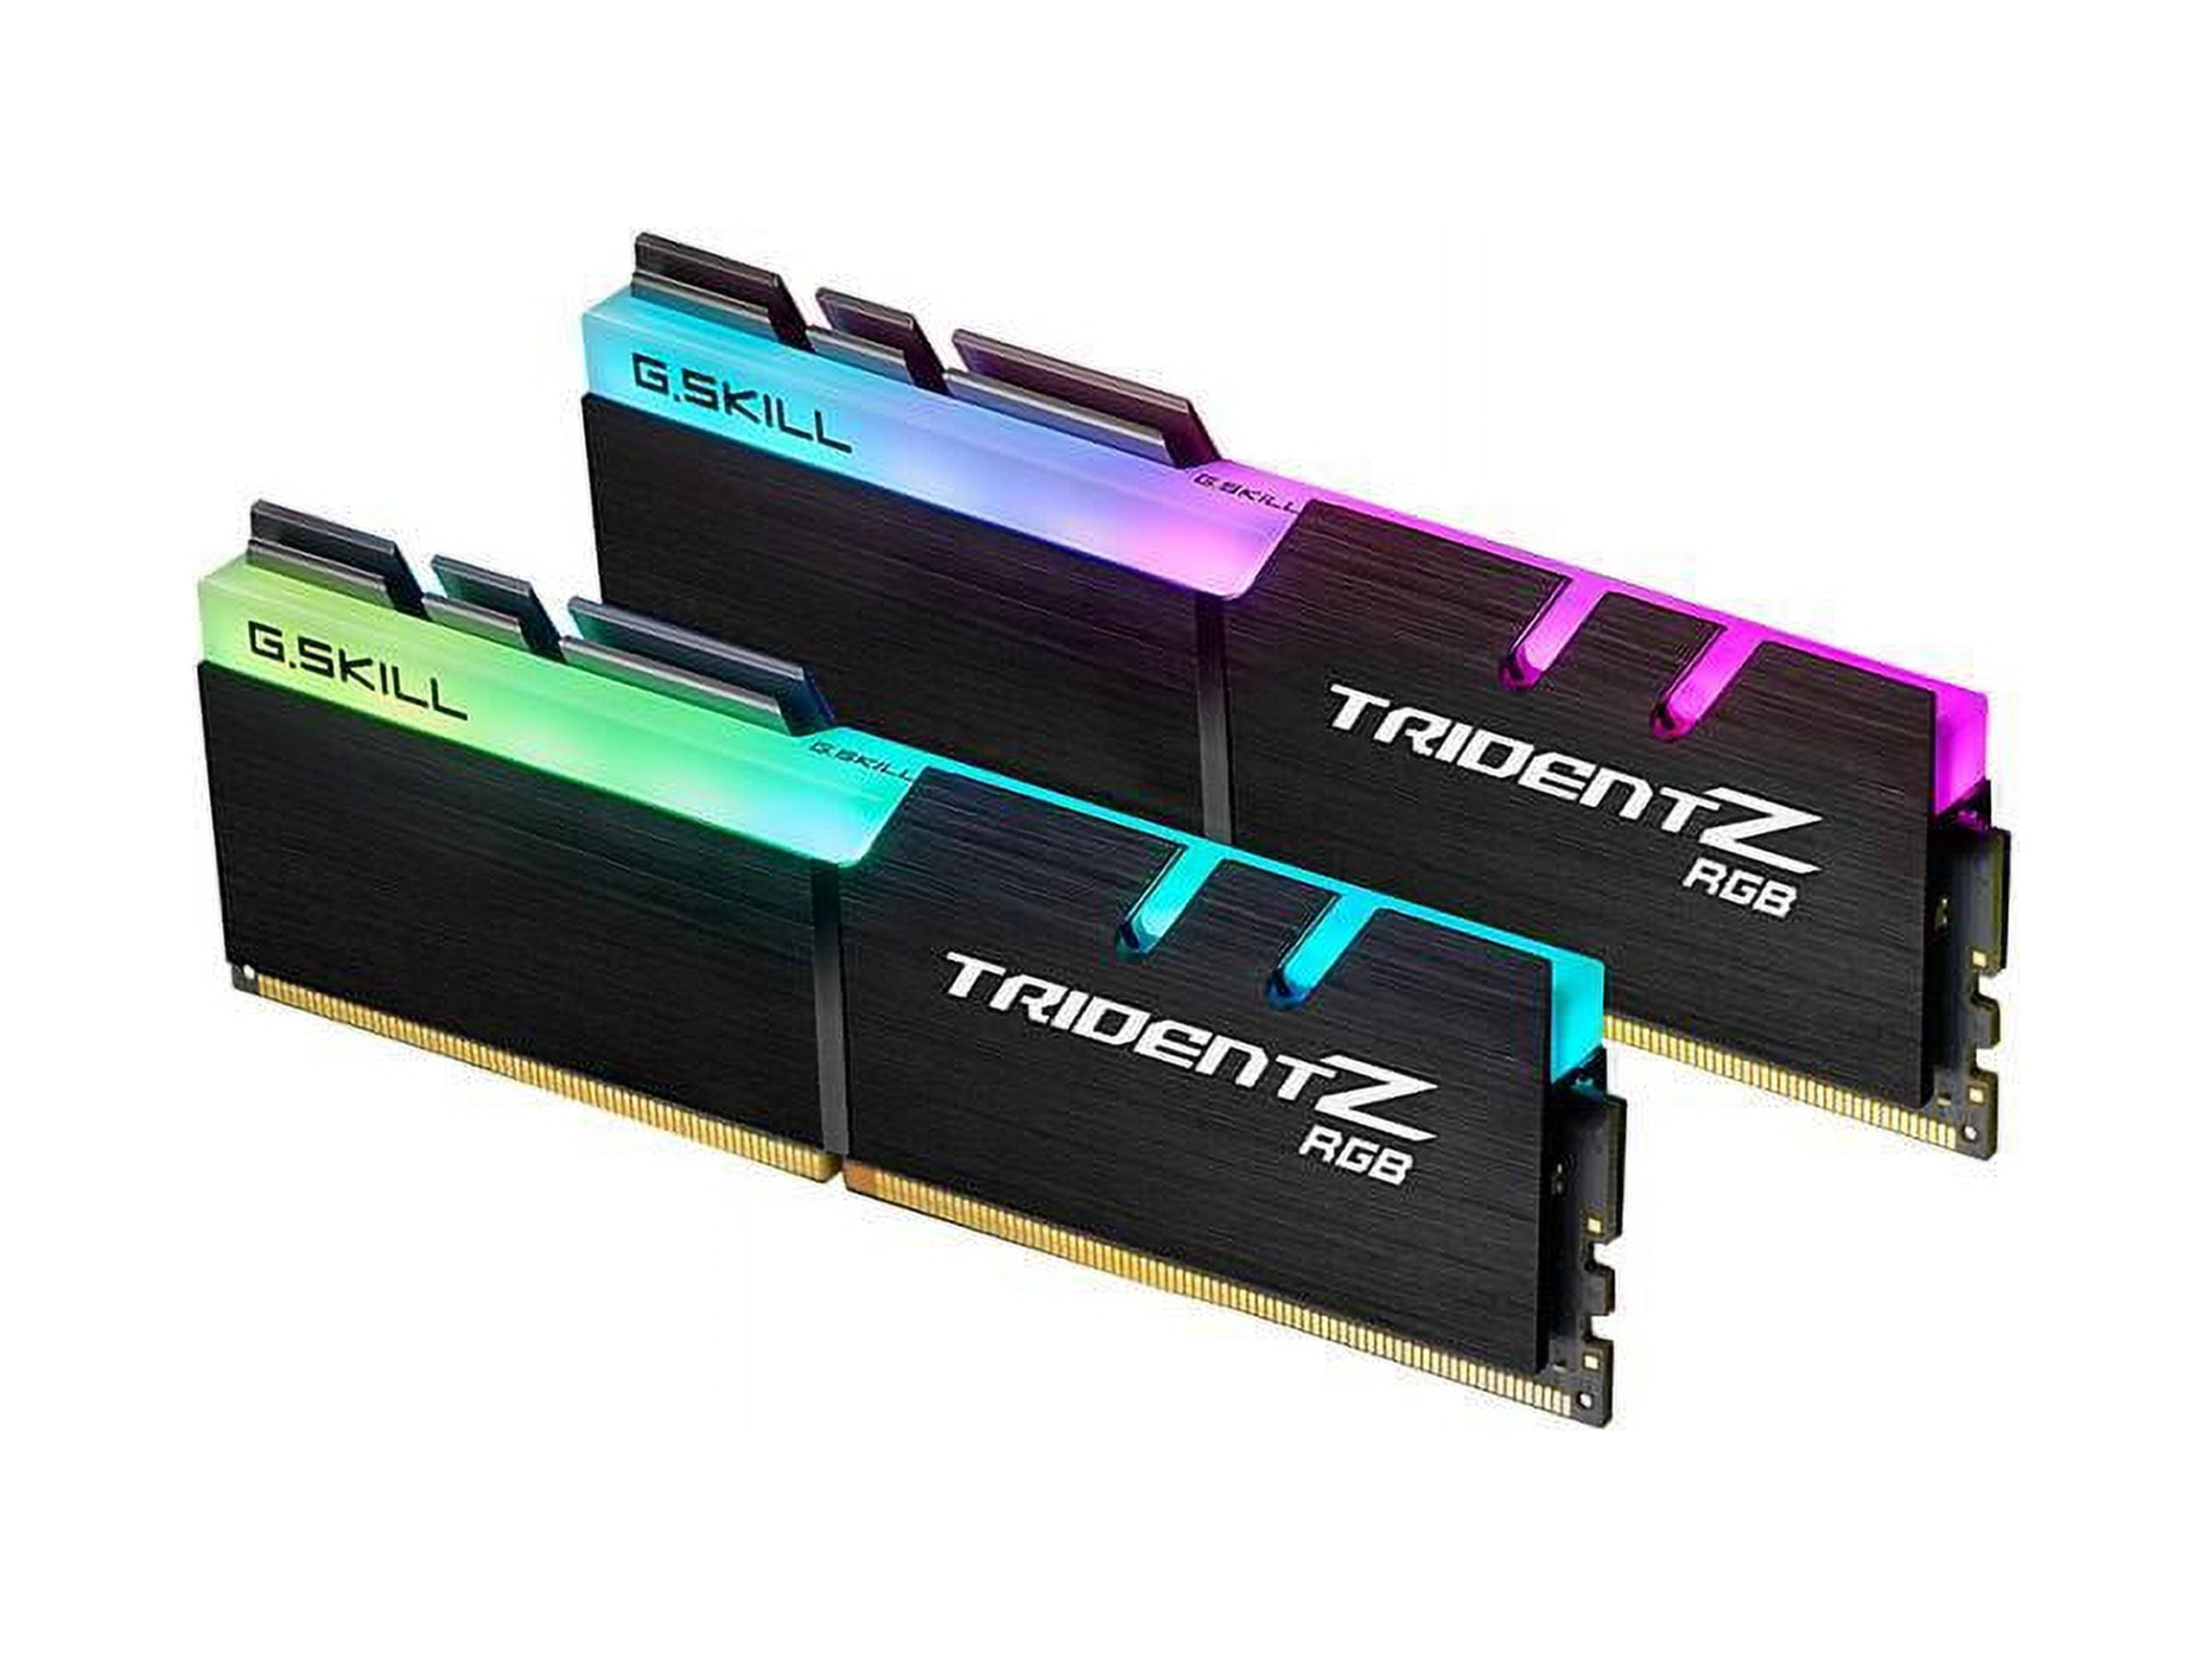 G.SKILL TridentZ RGB Series Model F4-3200C16D-16GTZR (PC4 25600) Memory RAM x 288-Pin (2 DDR4 8GB) PC 3200 16GB Desktop